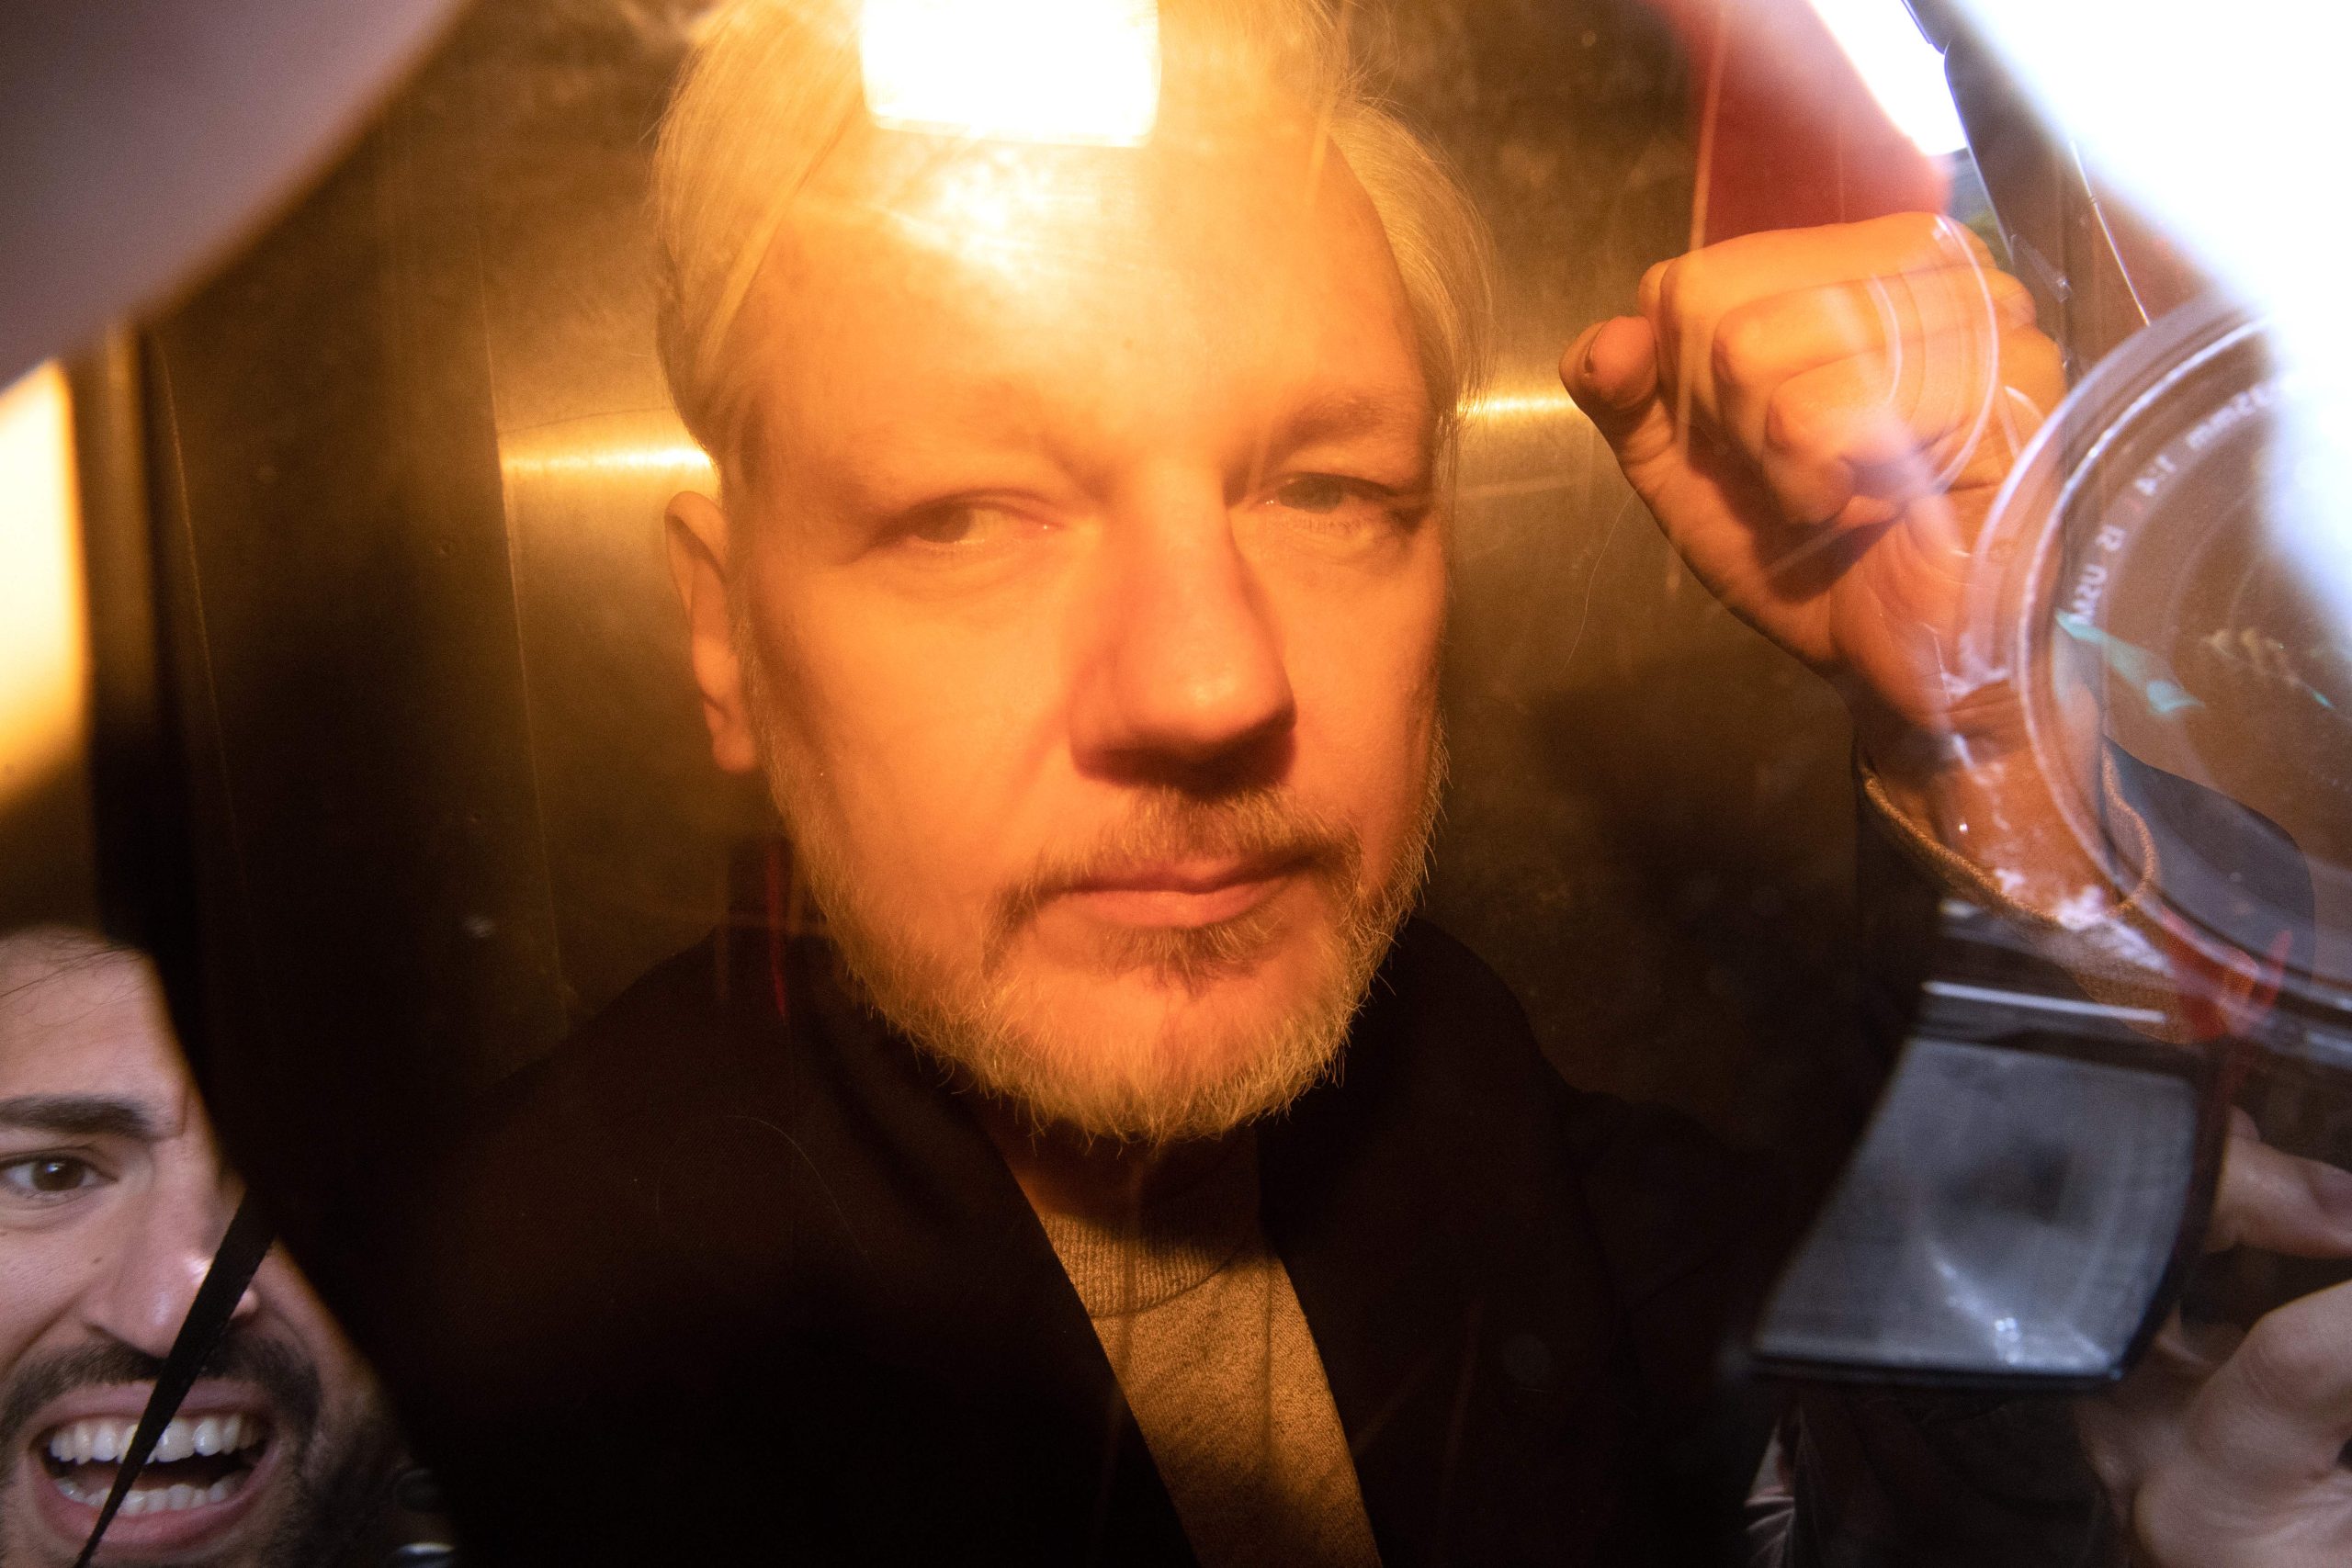 El fundador de Wikileaks, Julian Assange, gana el derecho a llevar el caso de extradición al tribunal superior del Reino Unido